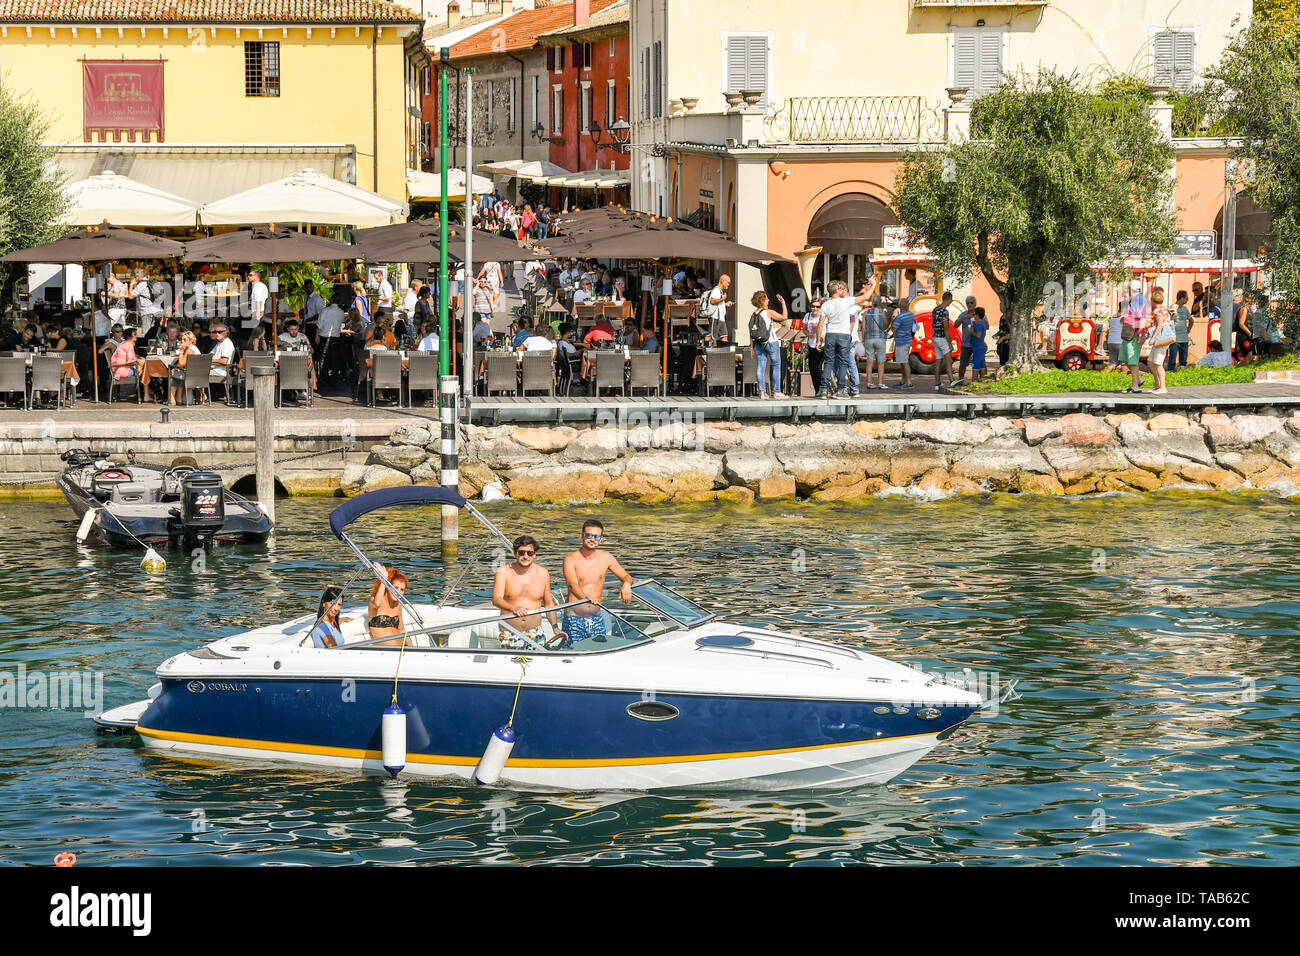 BARDOLINO, LAGO DI GARDA, Italia - Settembre 2018: la gente in una barca a motore che lascia il porto di Bardolino sul Lago di Garda. Foto Stock